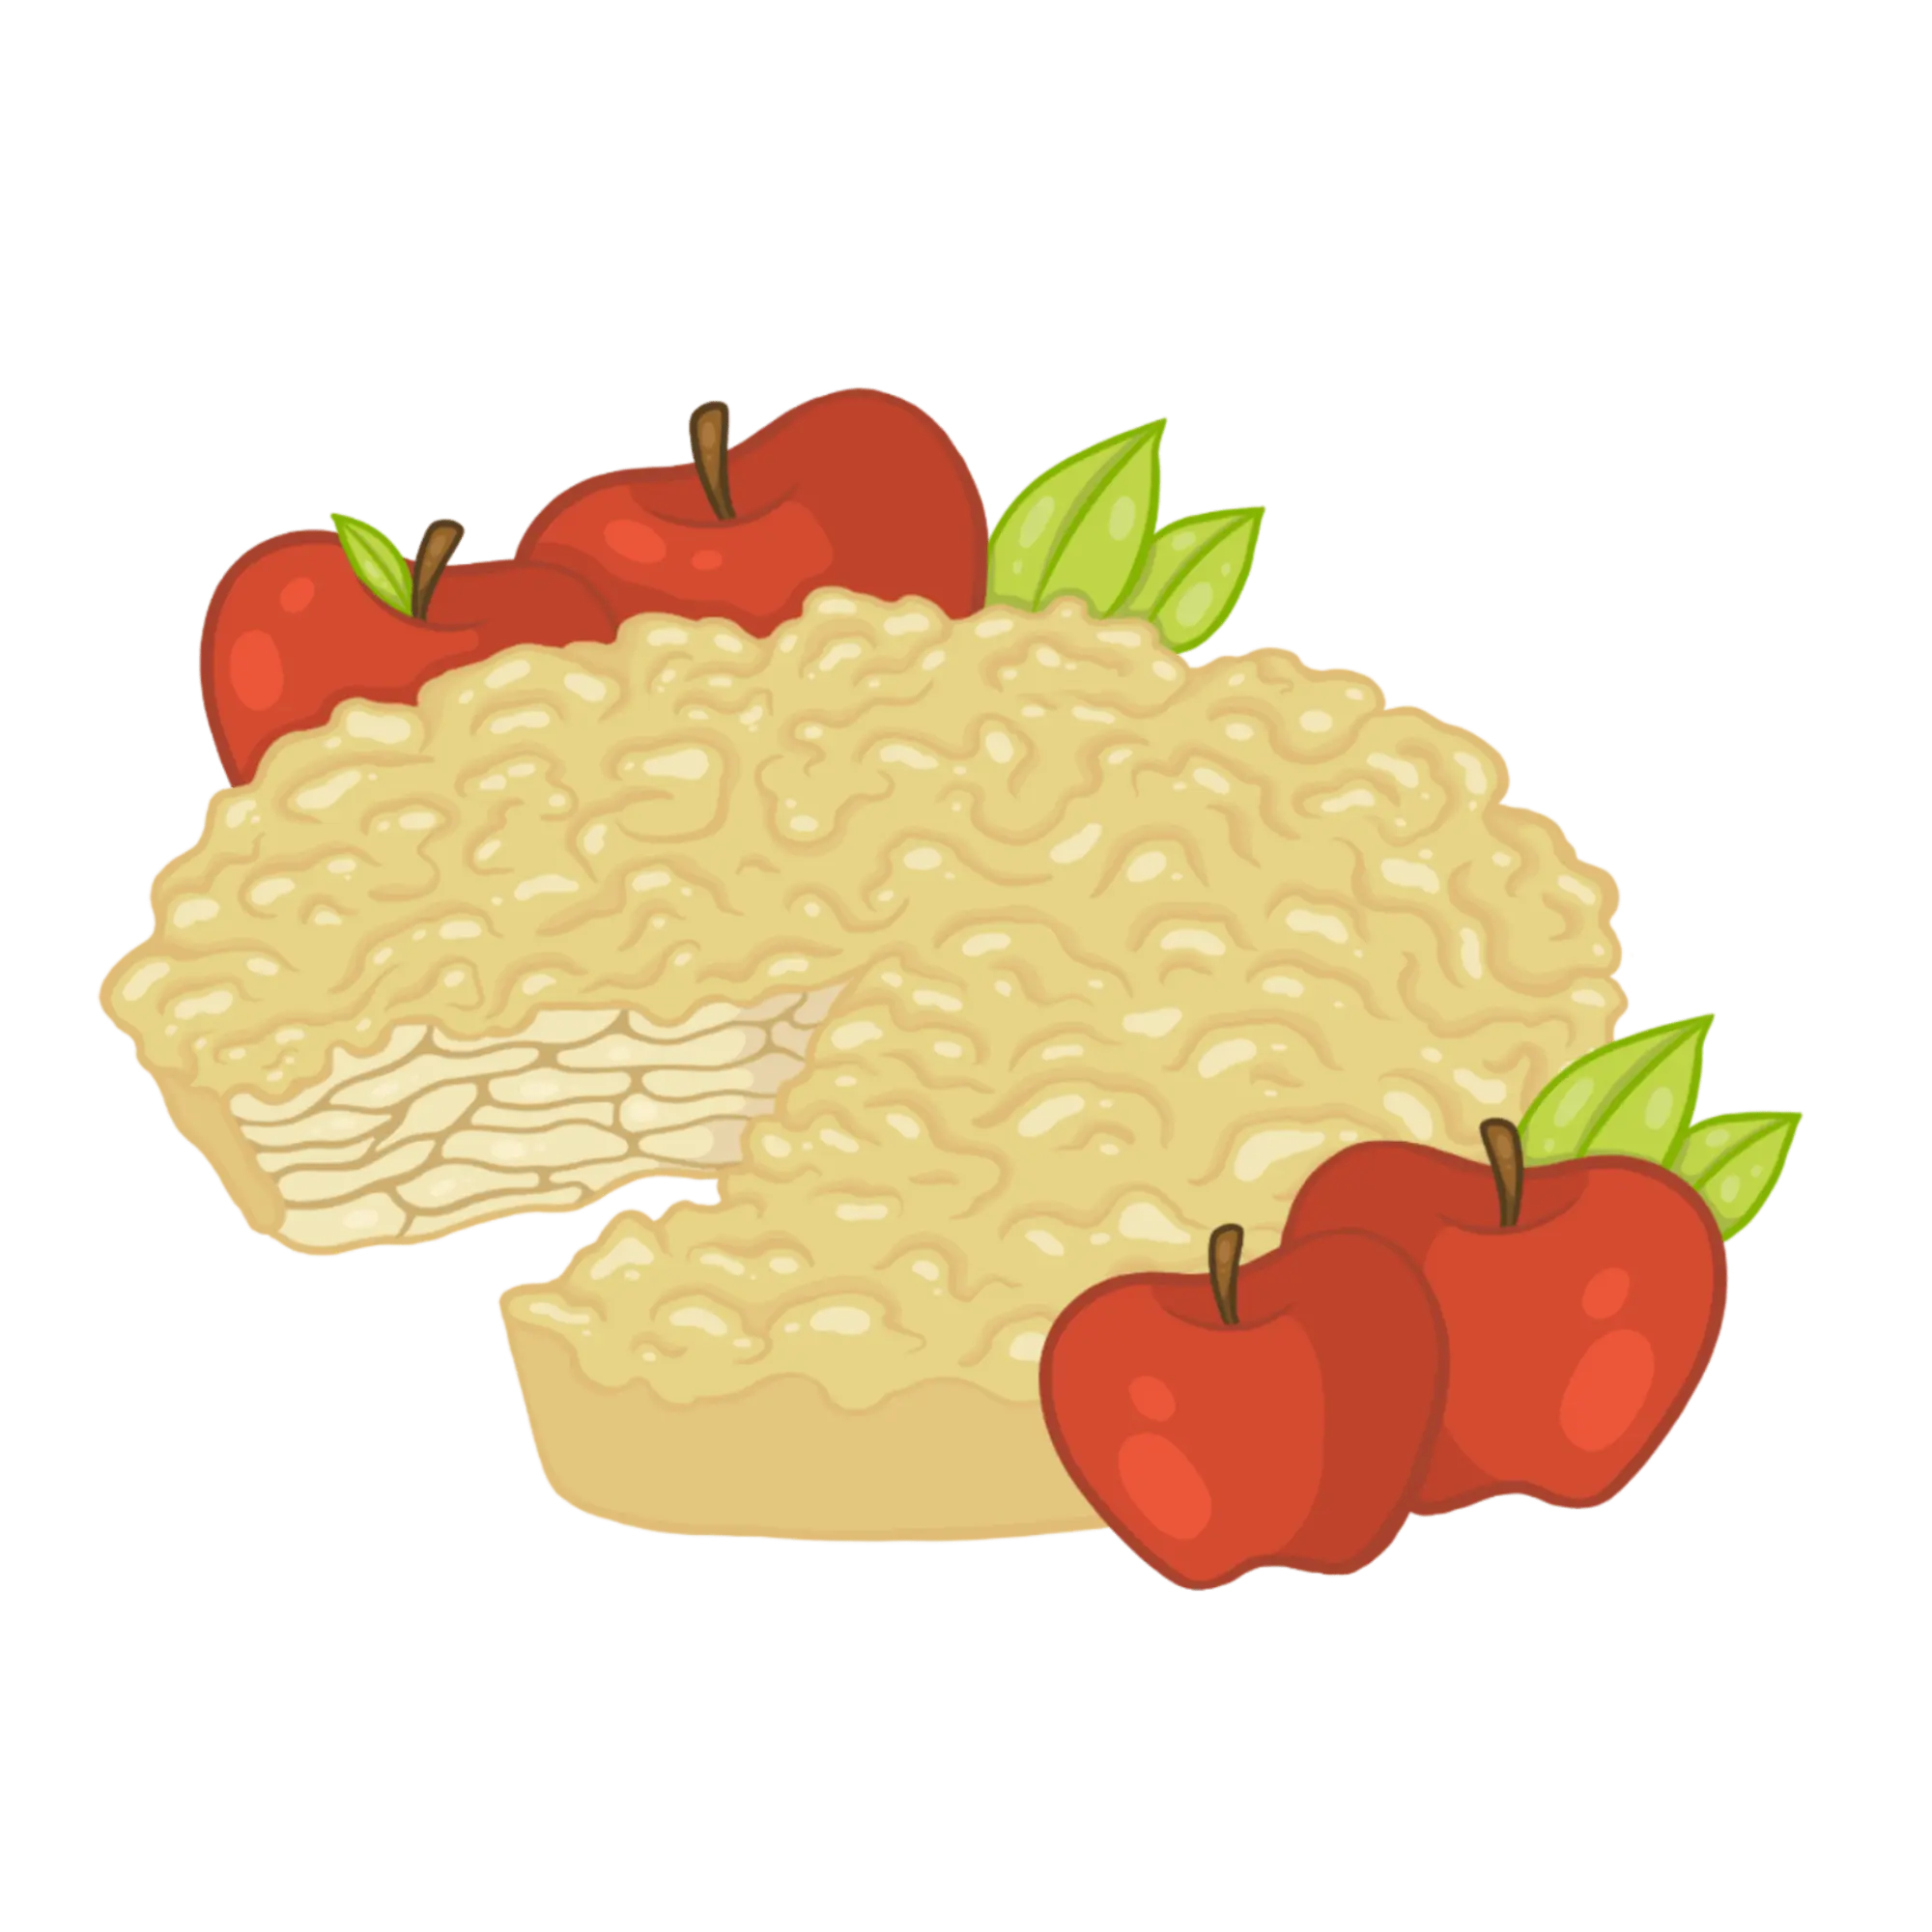 Angeschnittener Apfelkuchen mit roten Äpfeln als Illustration